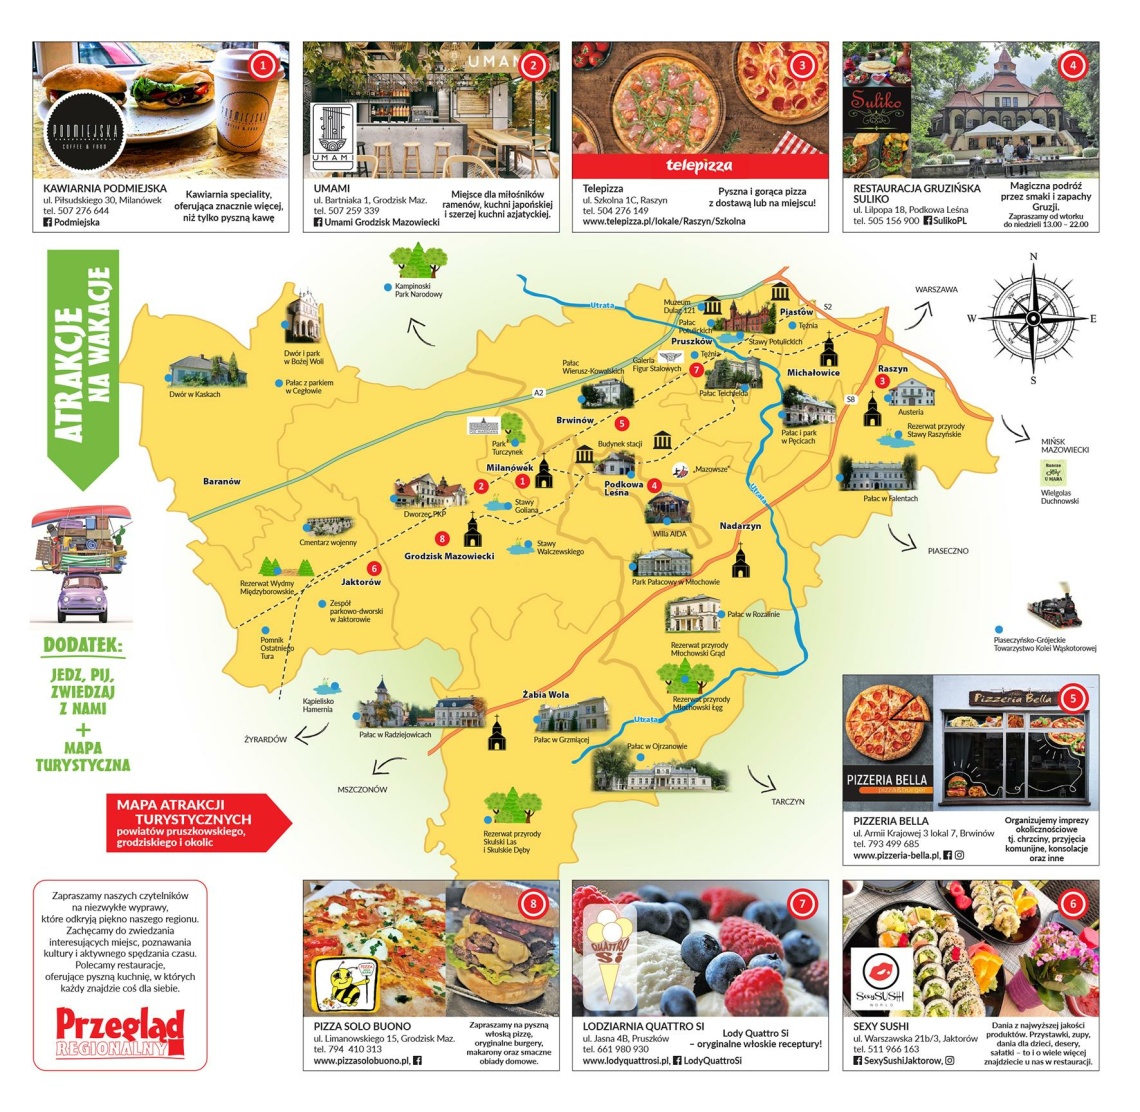 Mapa turystyczno-gastronomiczna w powiatach grodziskim, pruszkowskim i okolicach